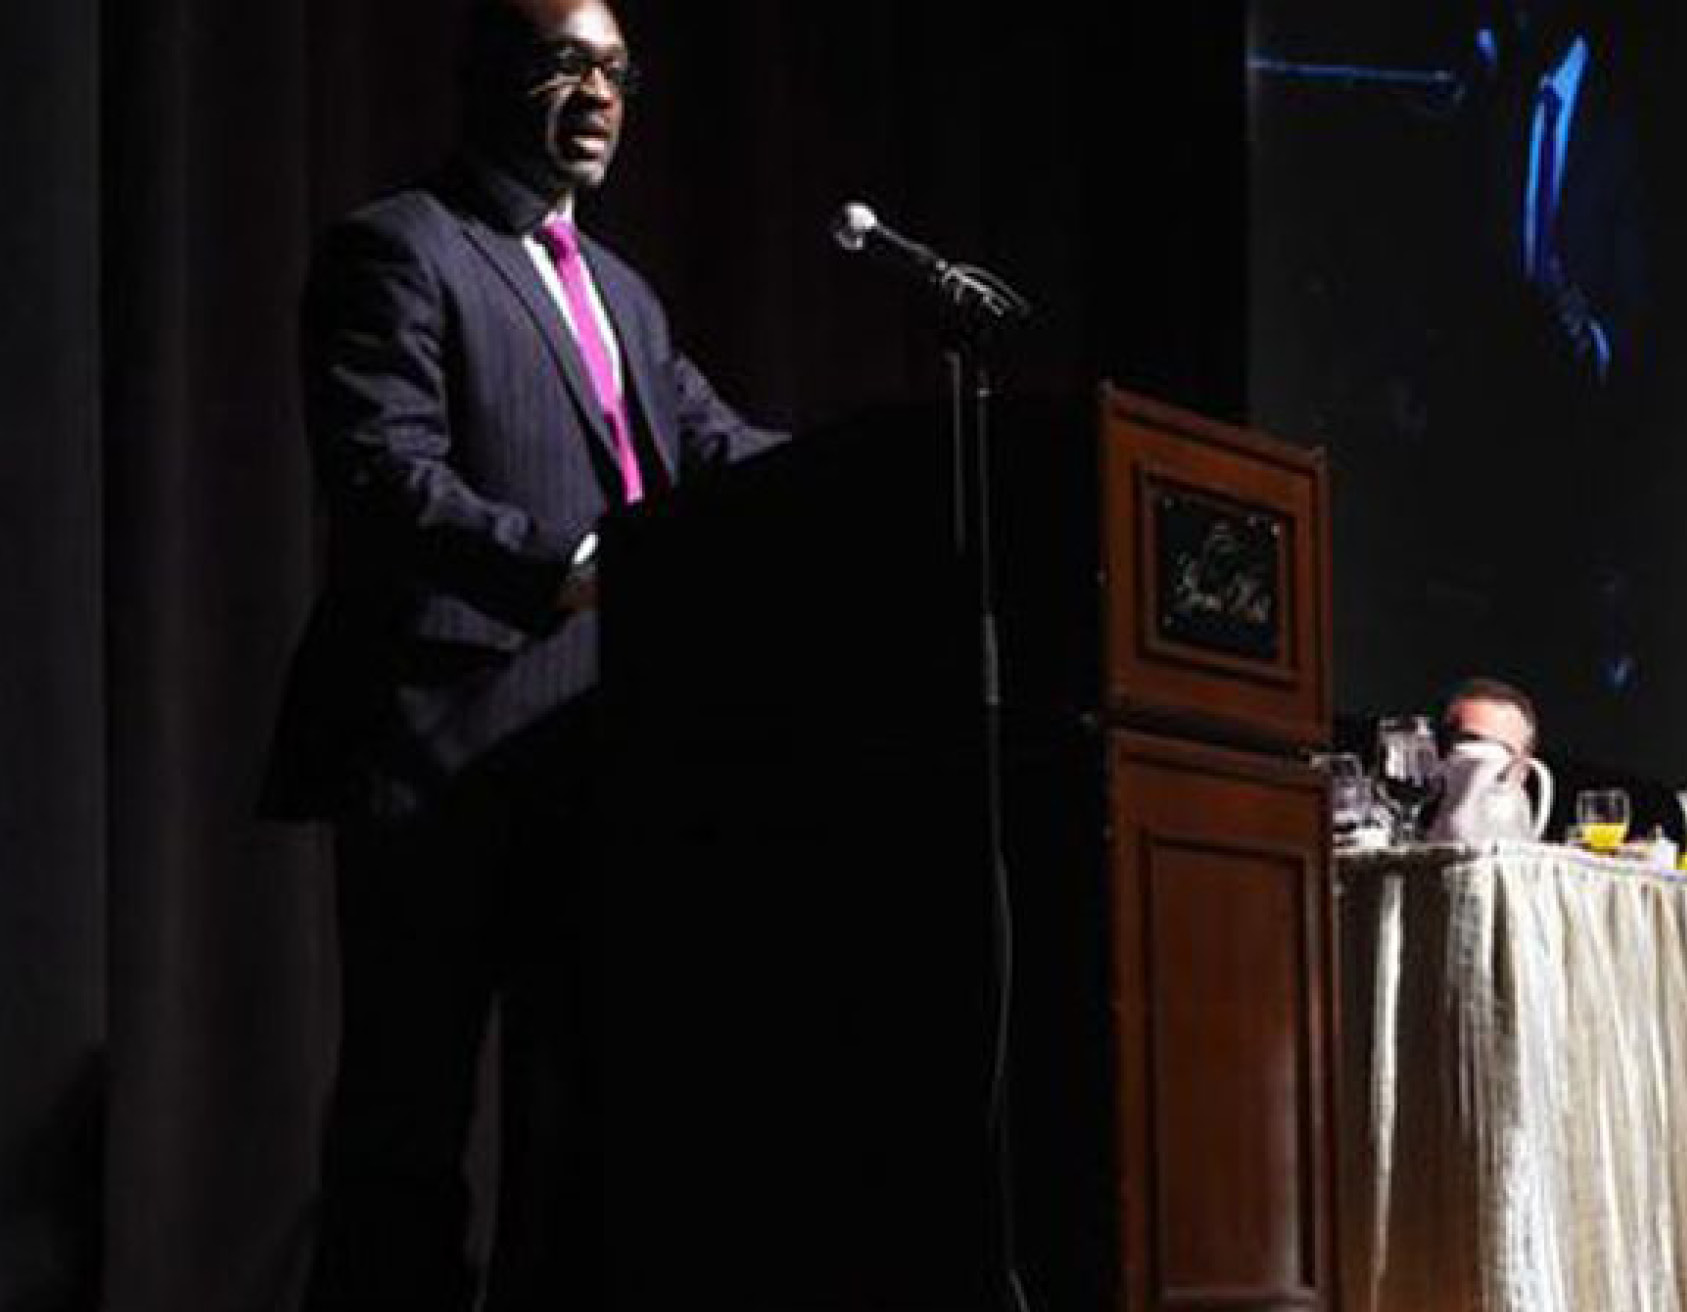 man giving a speech at podium